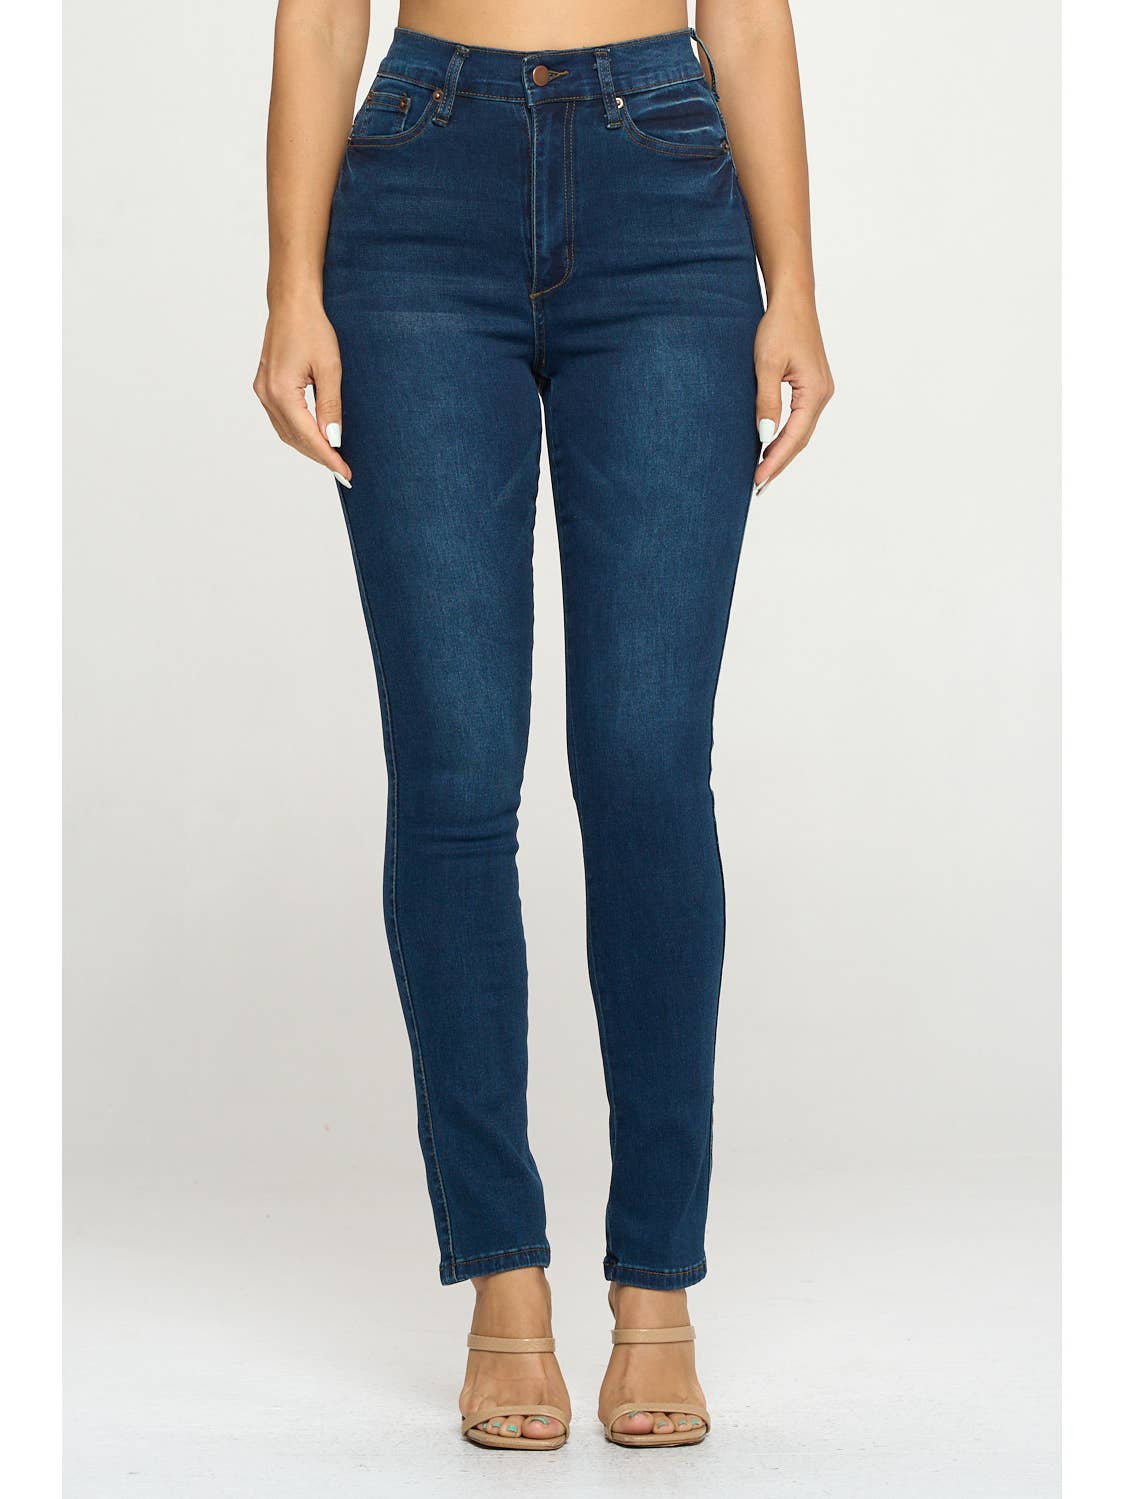 Kimberly High Waist Skinny Jeans